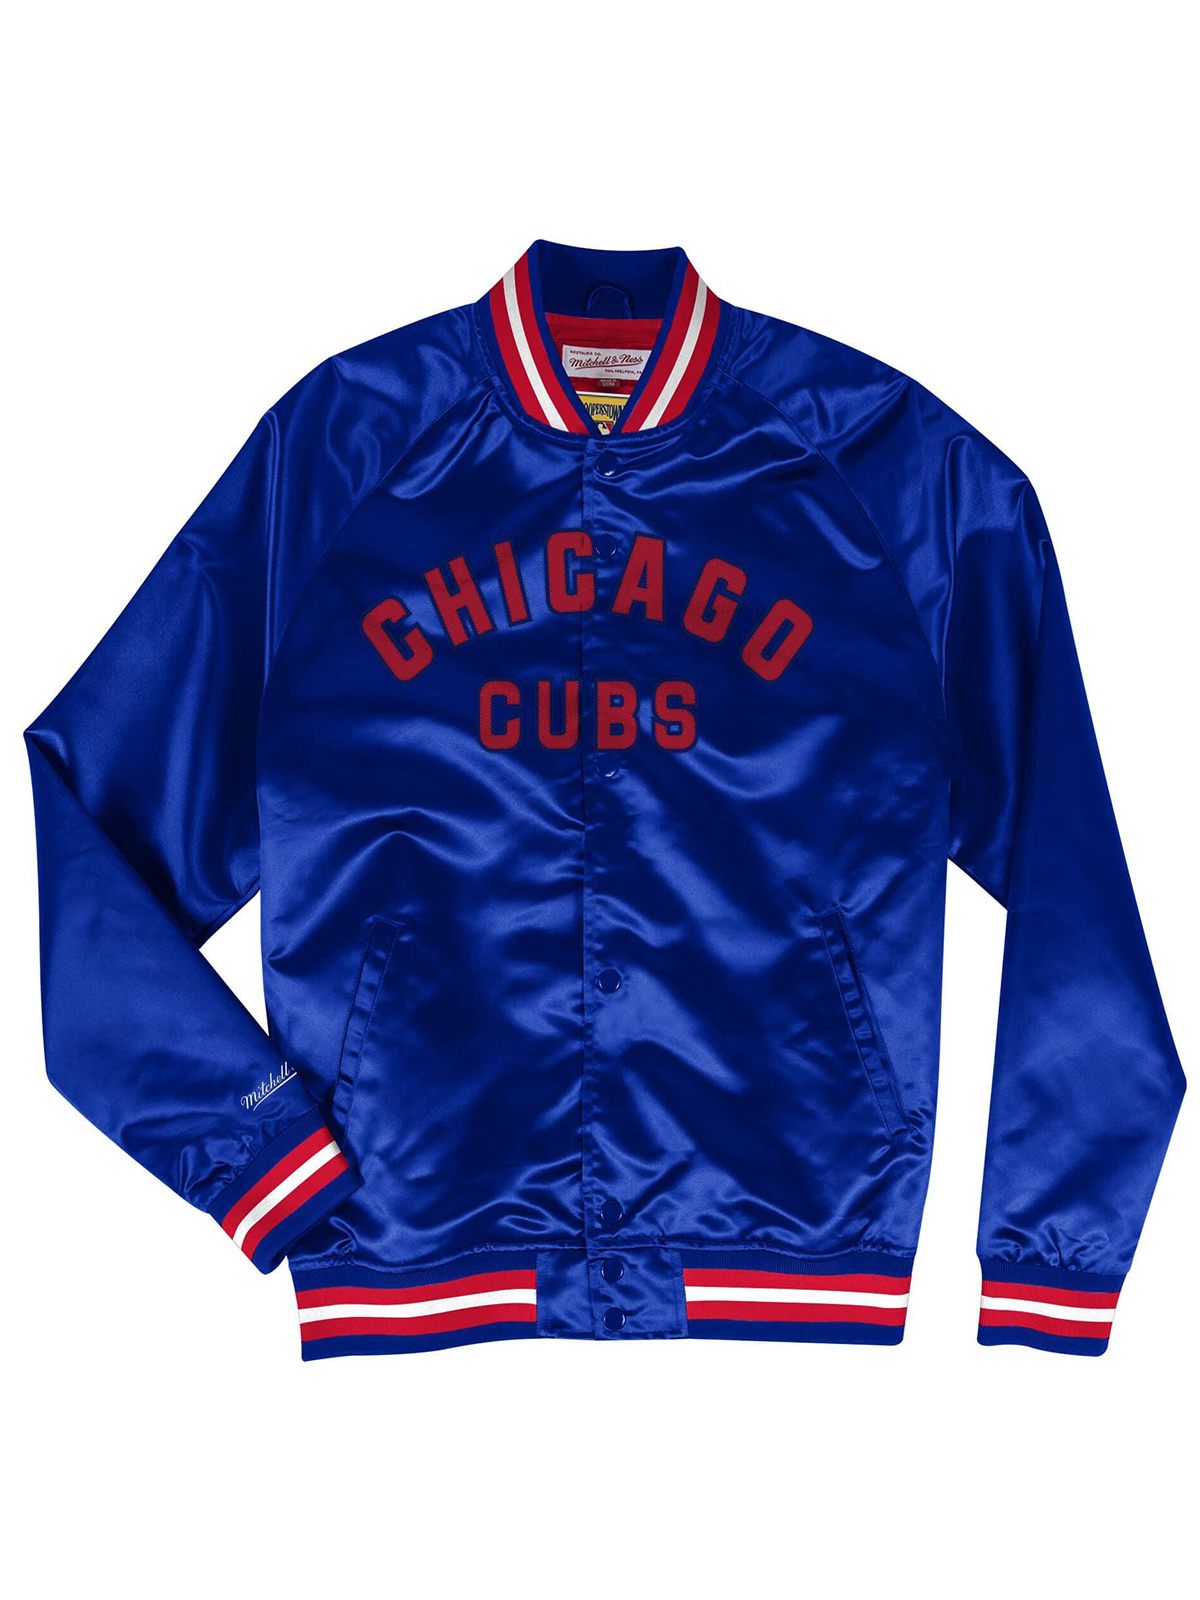 Chicago Cubs Jacket Baseball Varsity Jacket